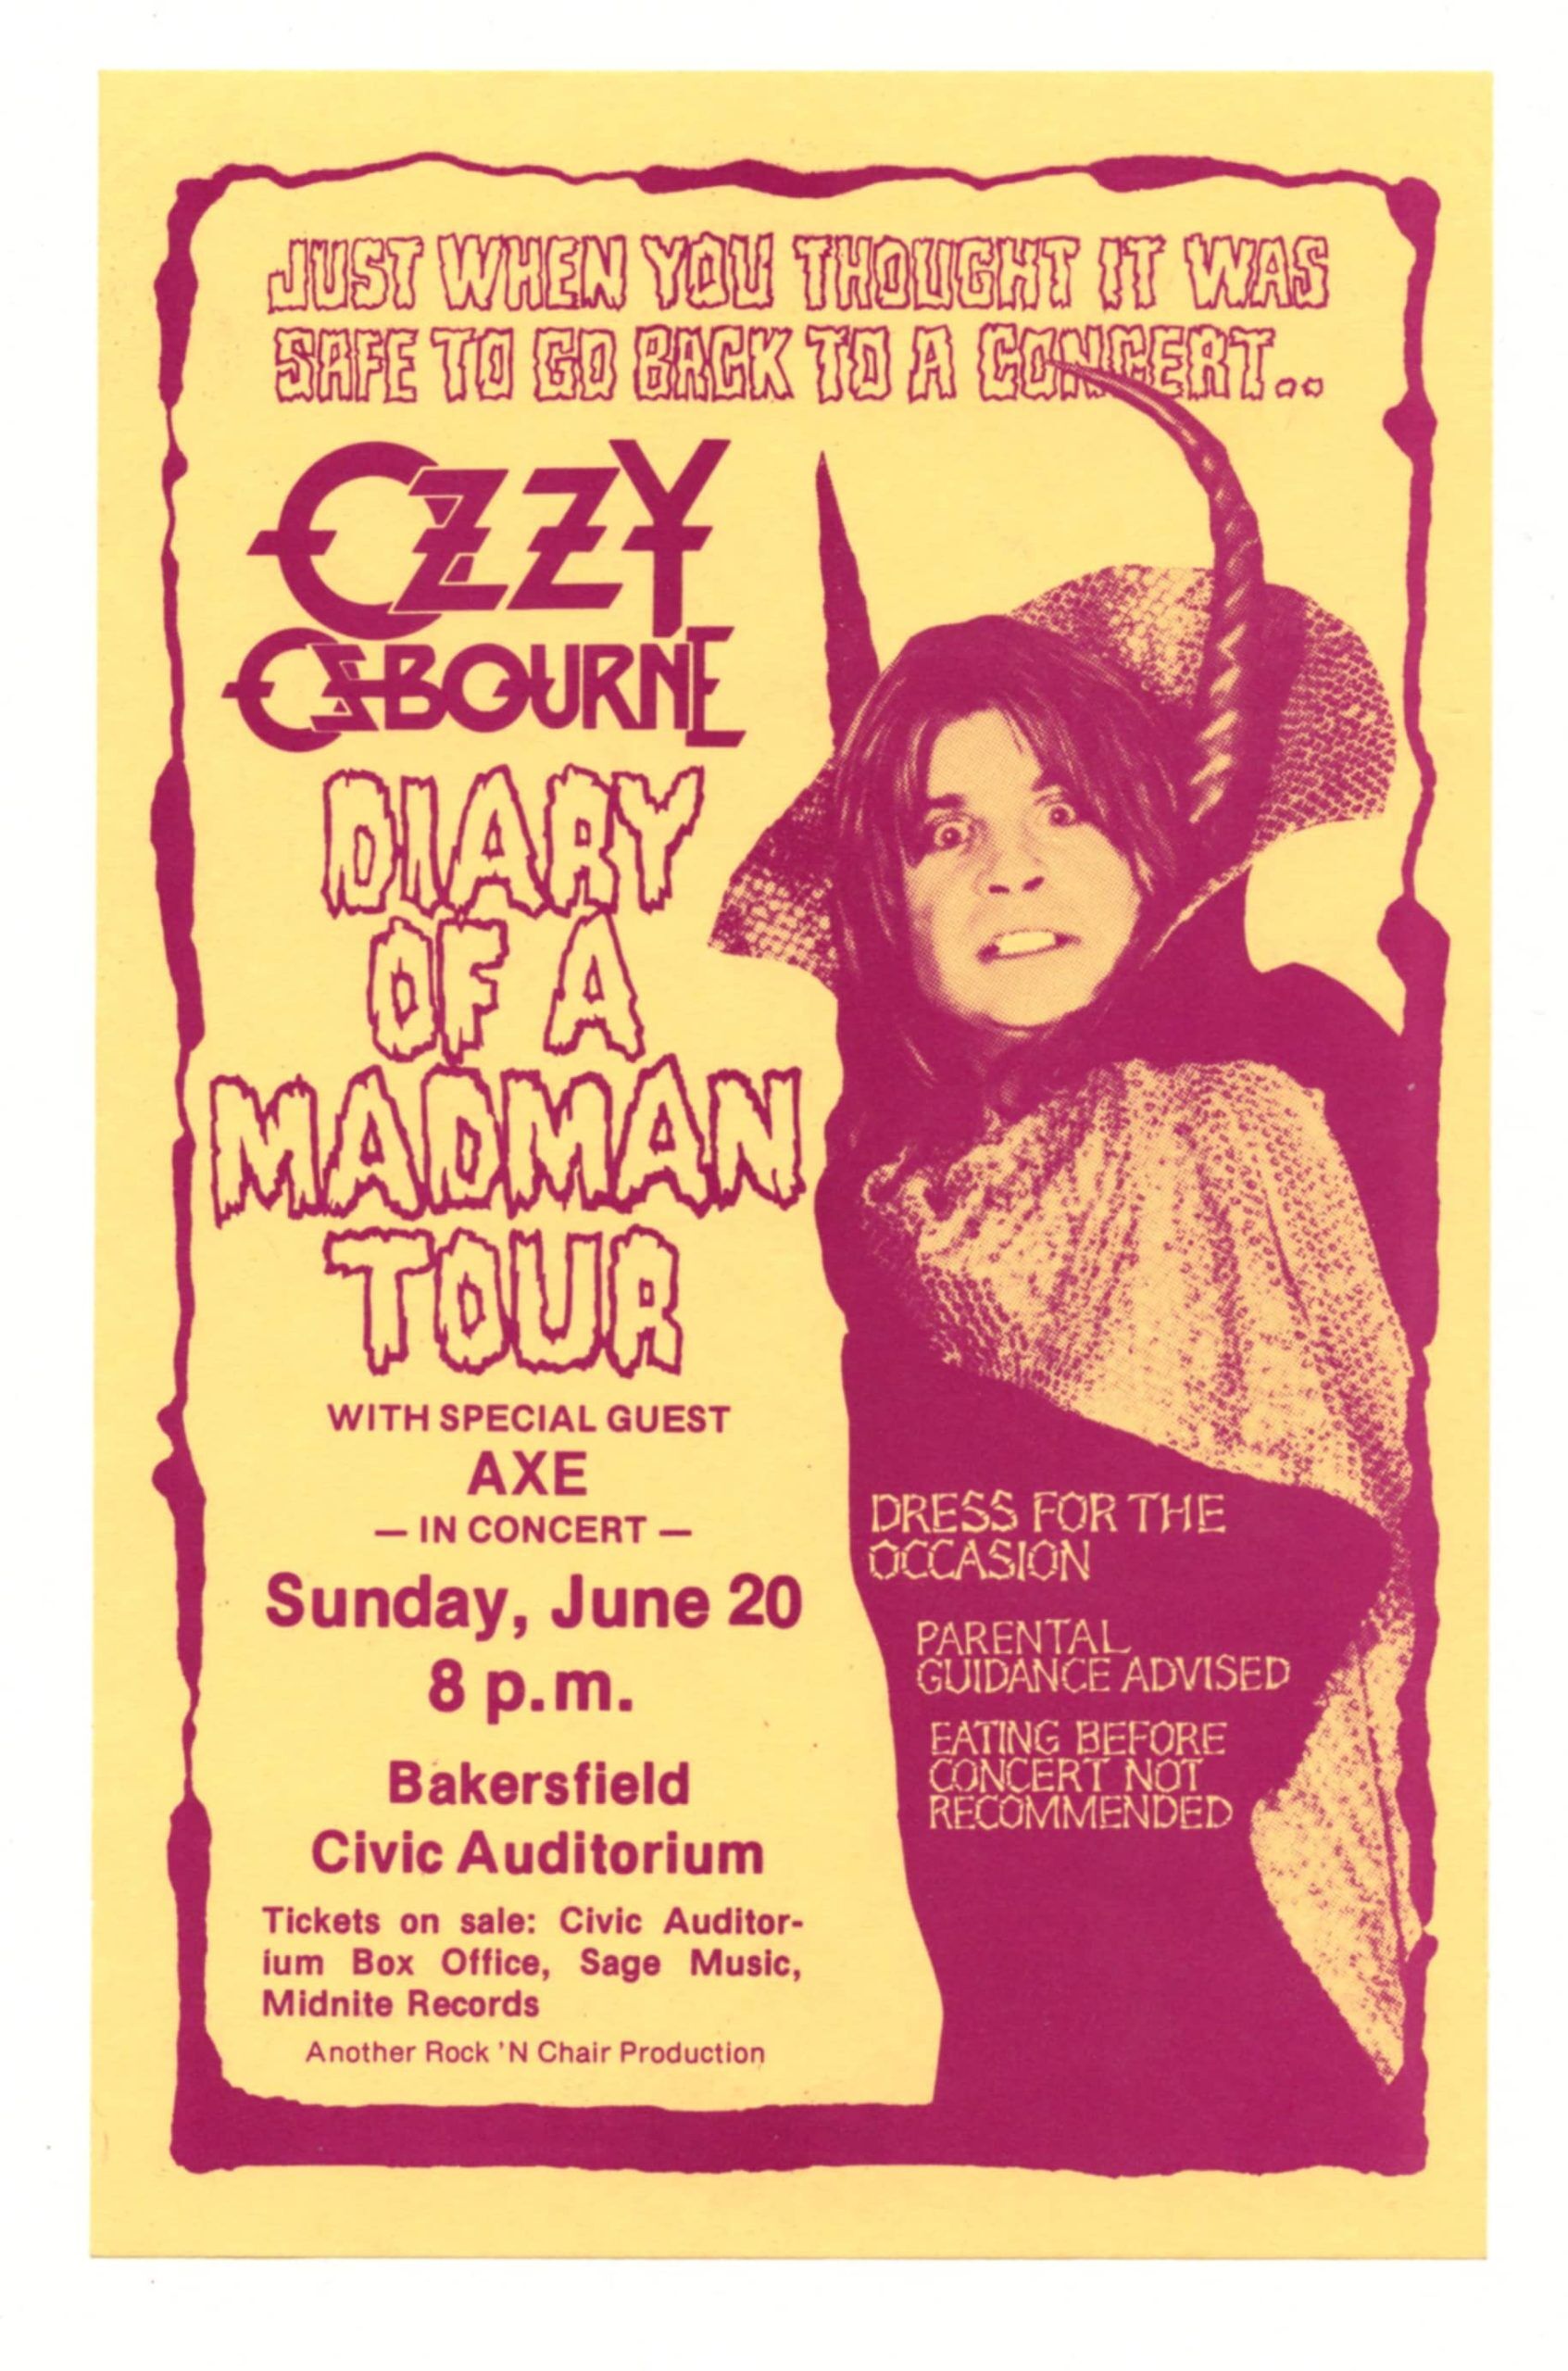 ozzy 1982 tour dates